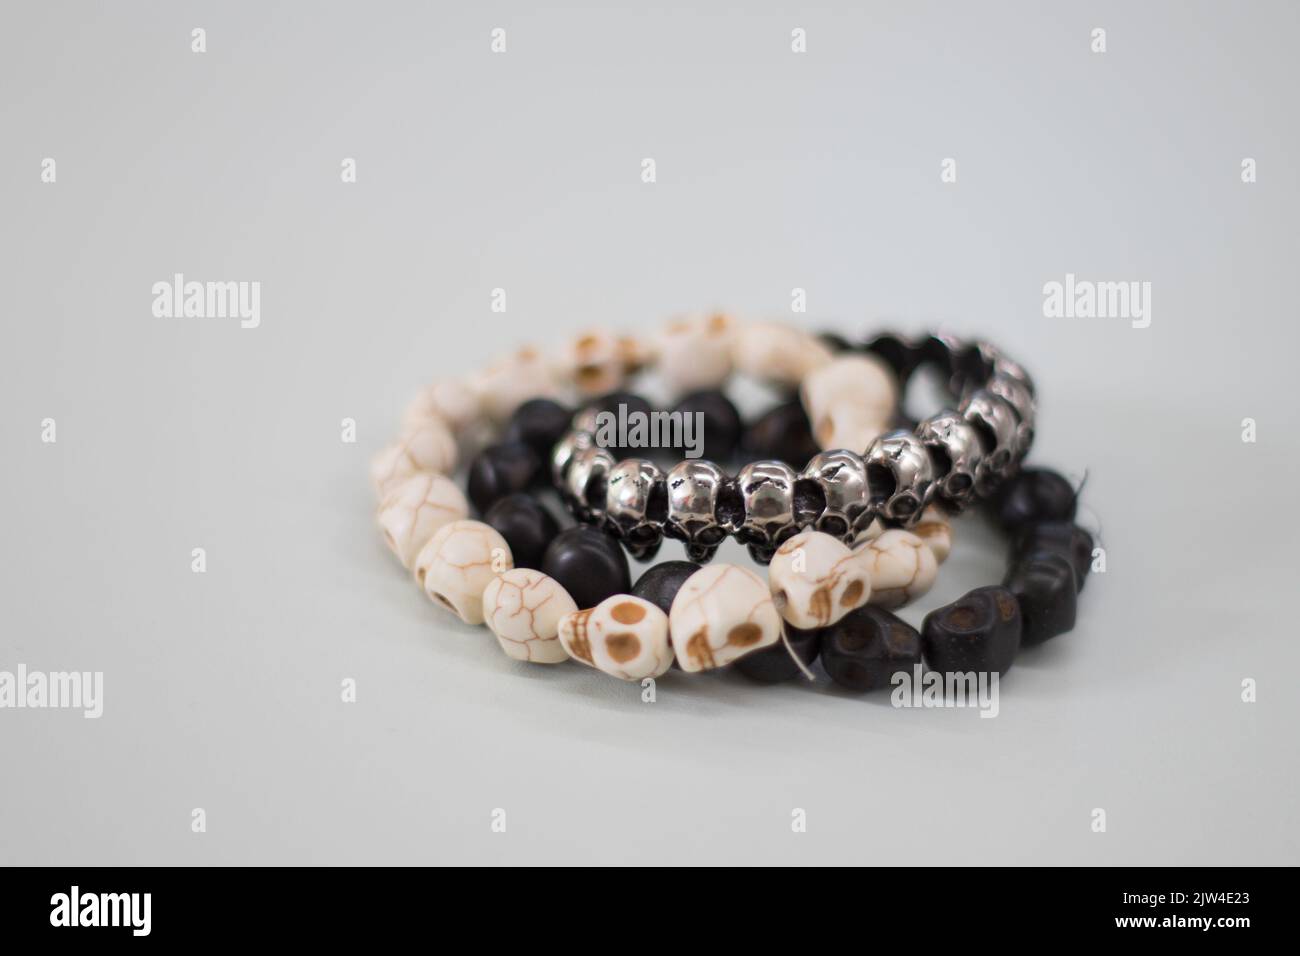 Gros plan de bracelets avec de petites perles en forme de crâne sur une surface grise Banque D'Images